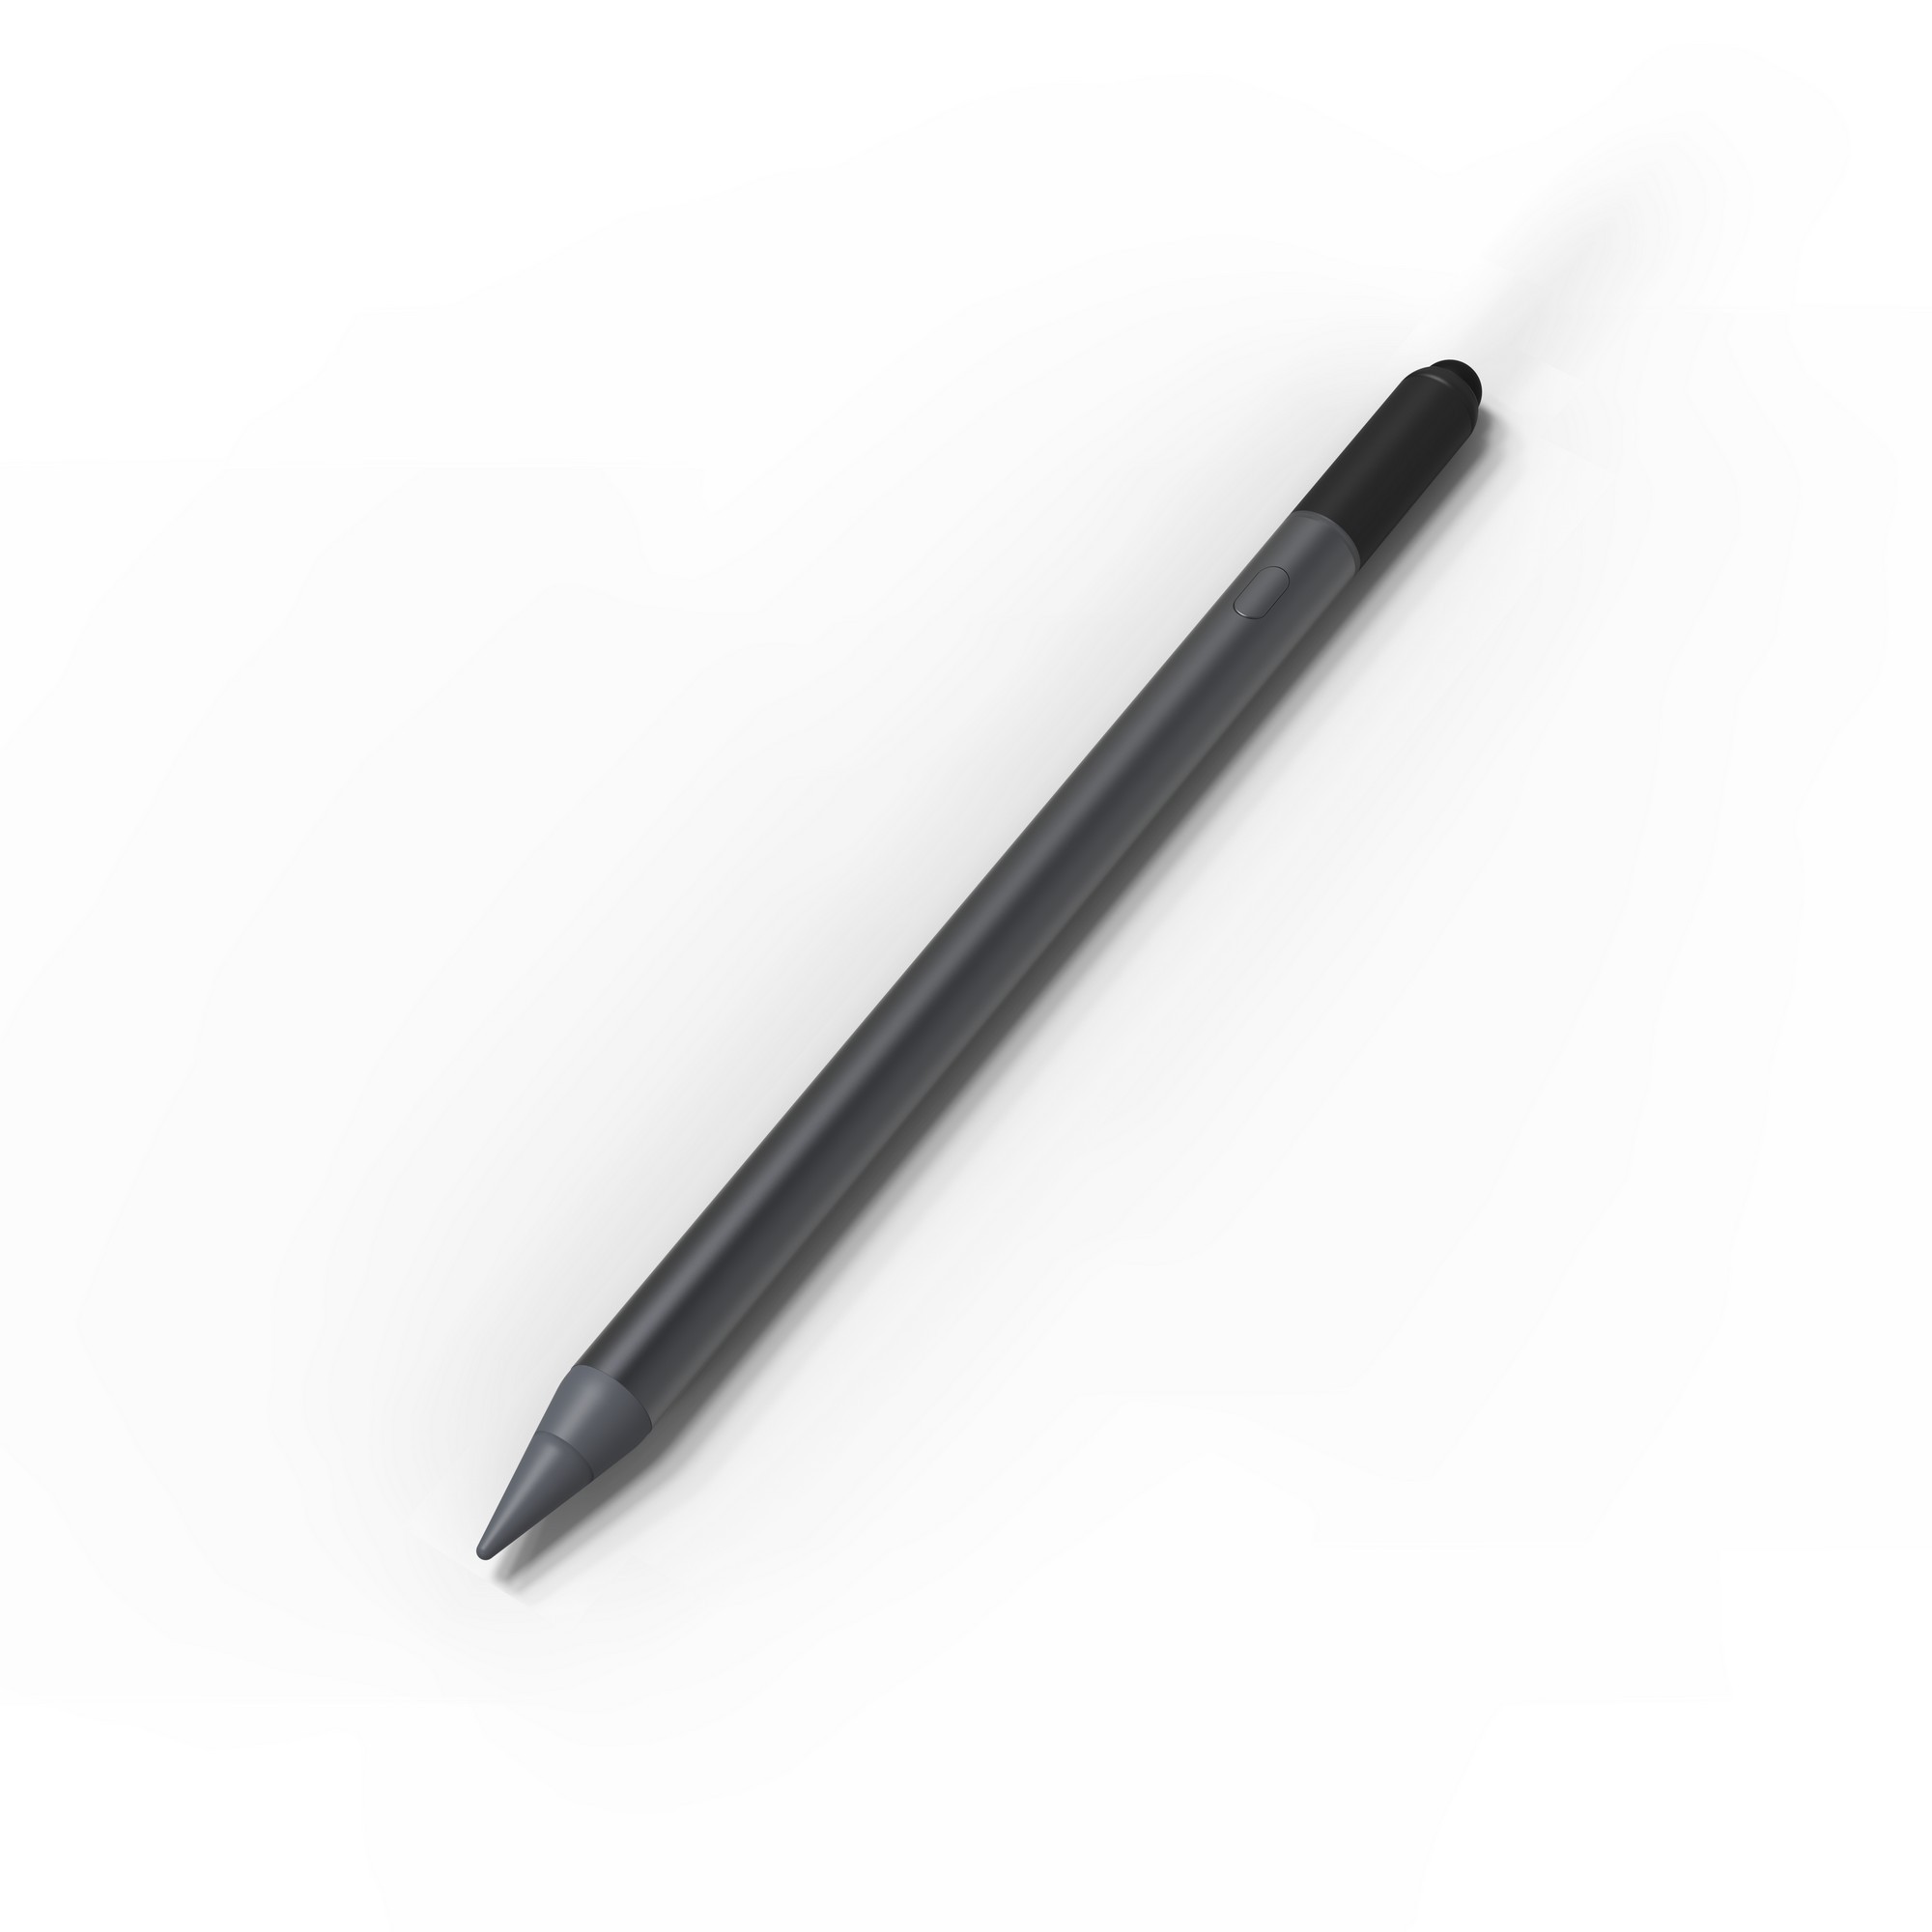 Cómo vincular el Apple Pencil a un iPad